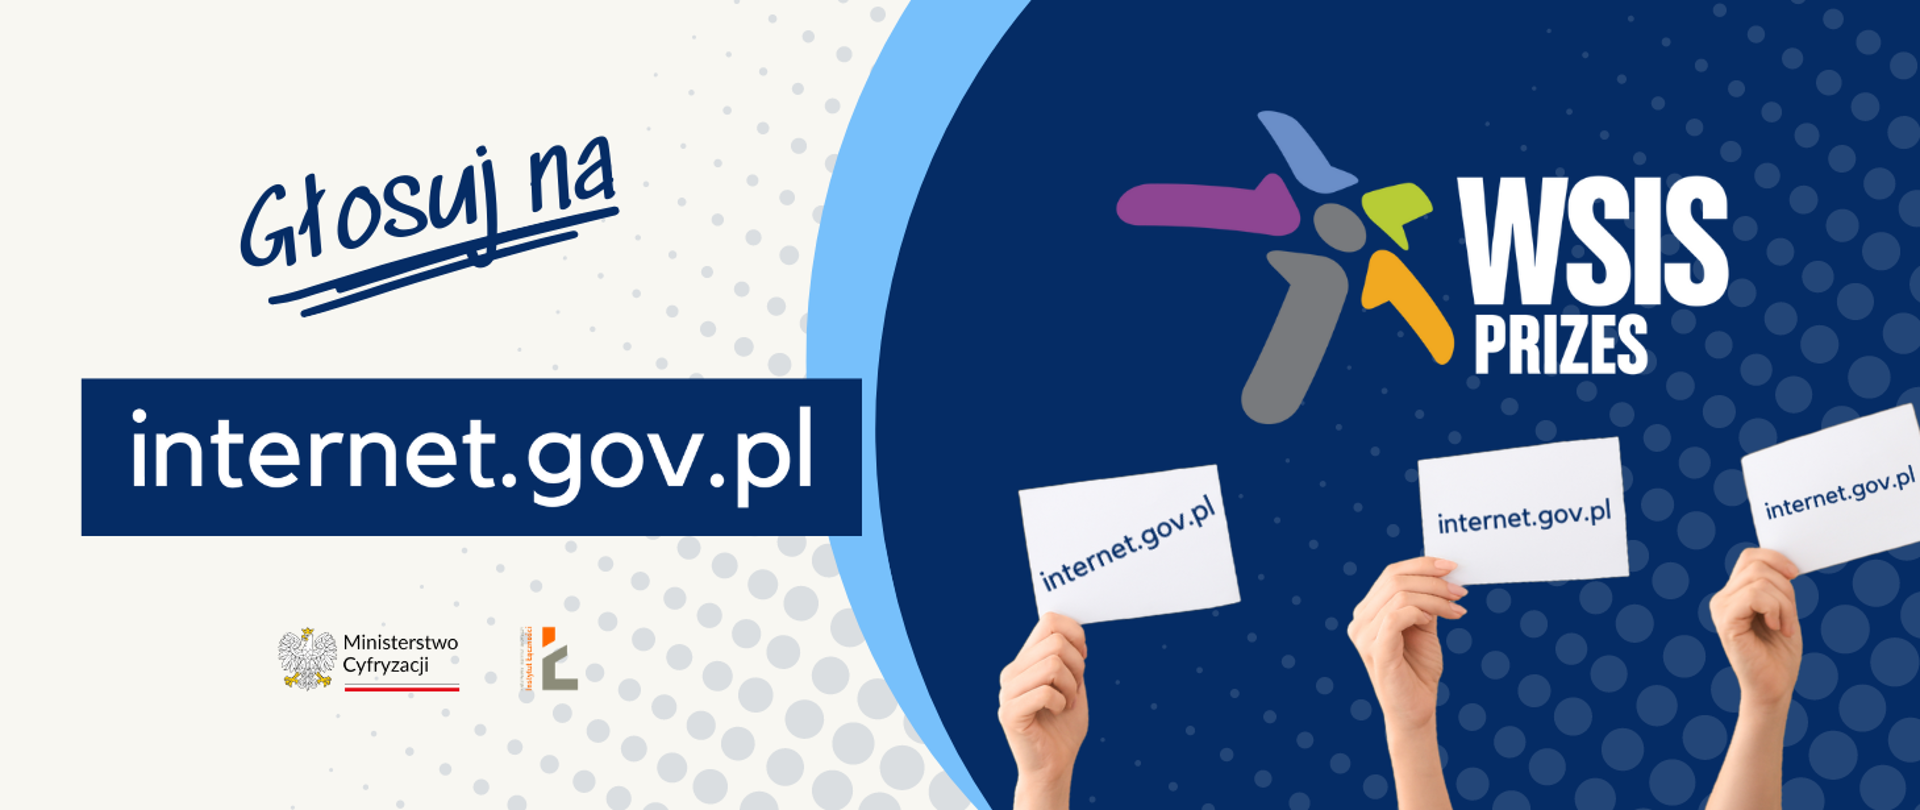 Głosuj na internet.gov.pl